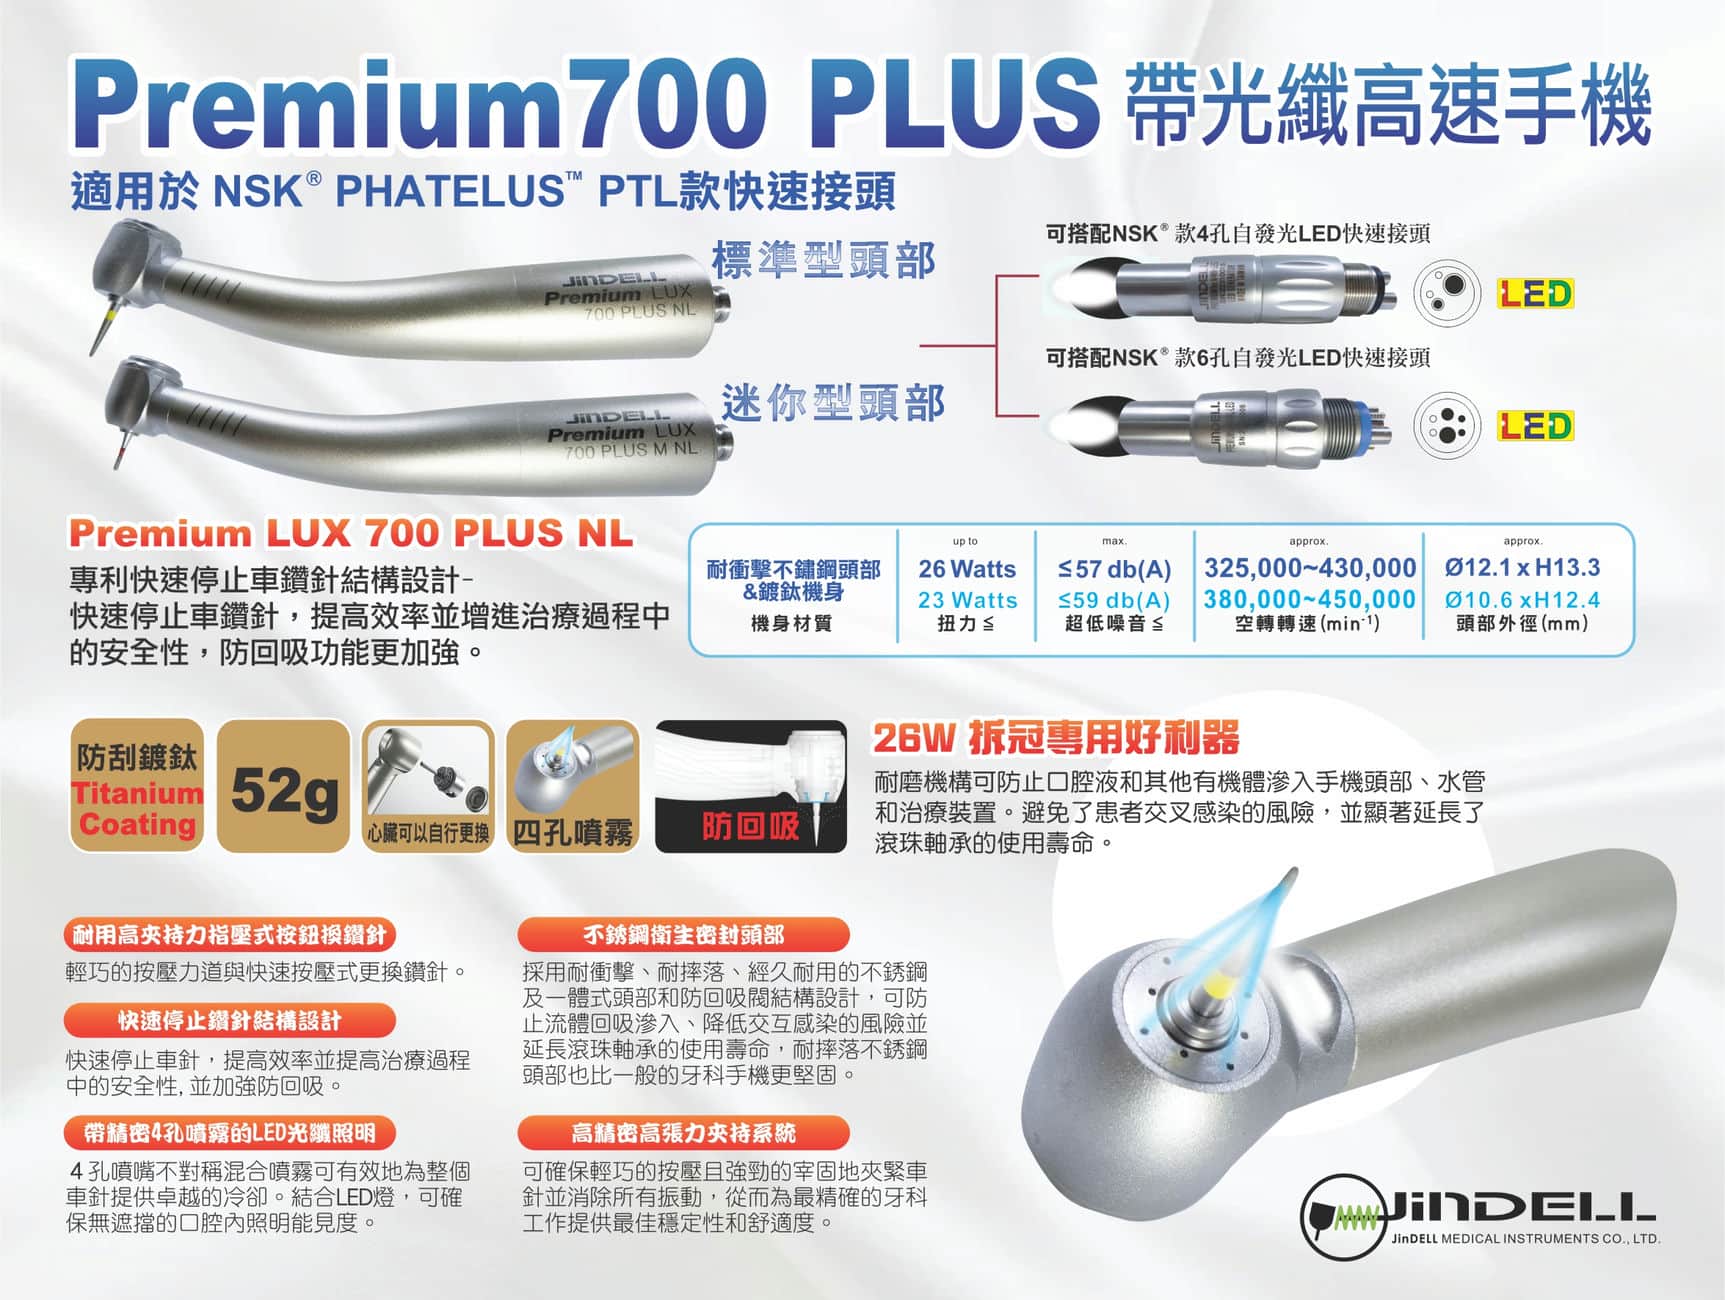 New Premium LUX 700 PLUS NL-TW-Features-1